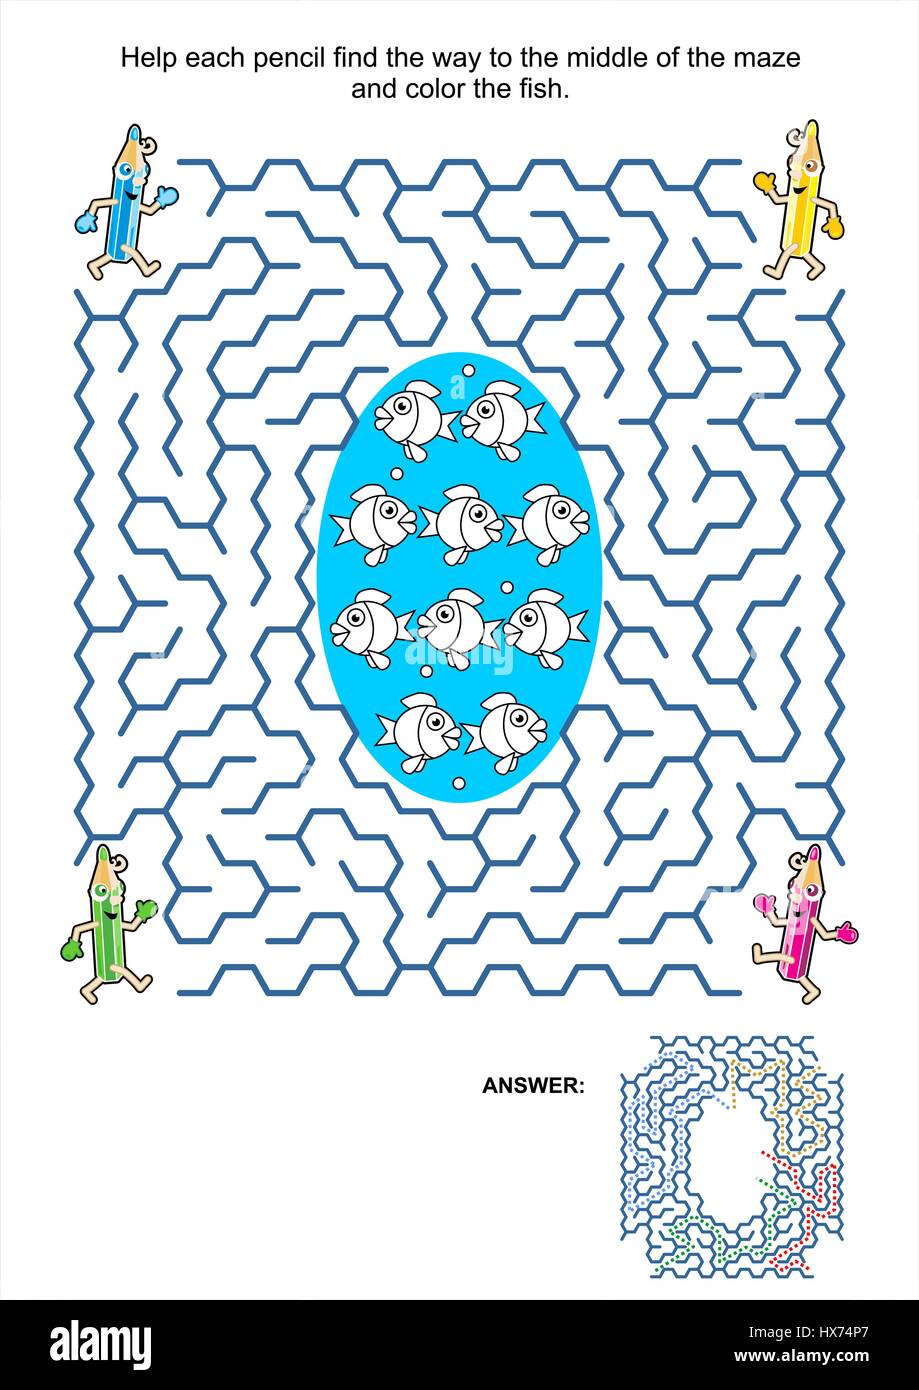 Gioco labirinto e colorazione pagina Attività per bambini: aiutare ciascuno a matita di trovare il modo per mezzo del labirinto e il colore dei pesci. Risposta inclusa. Illustrazione Vettoriale